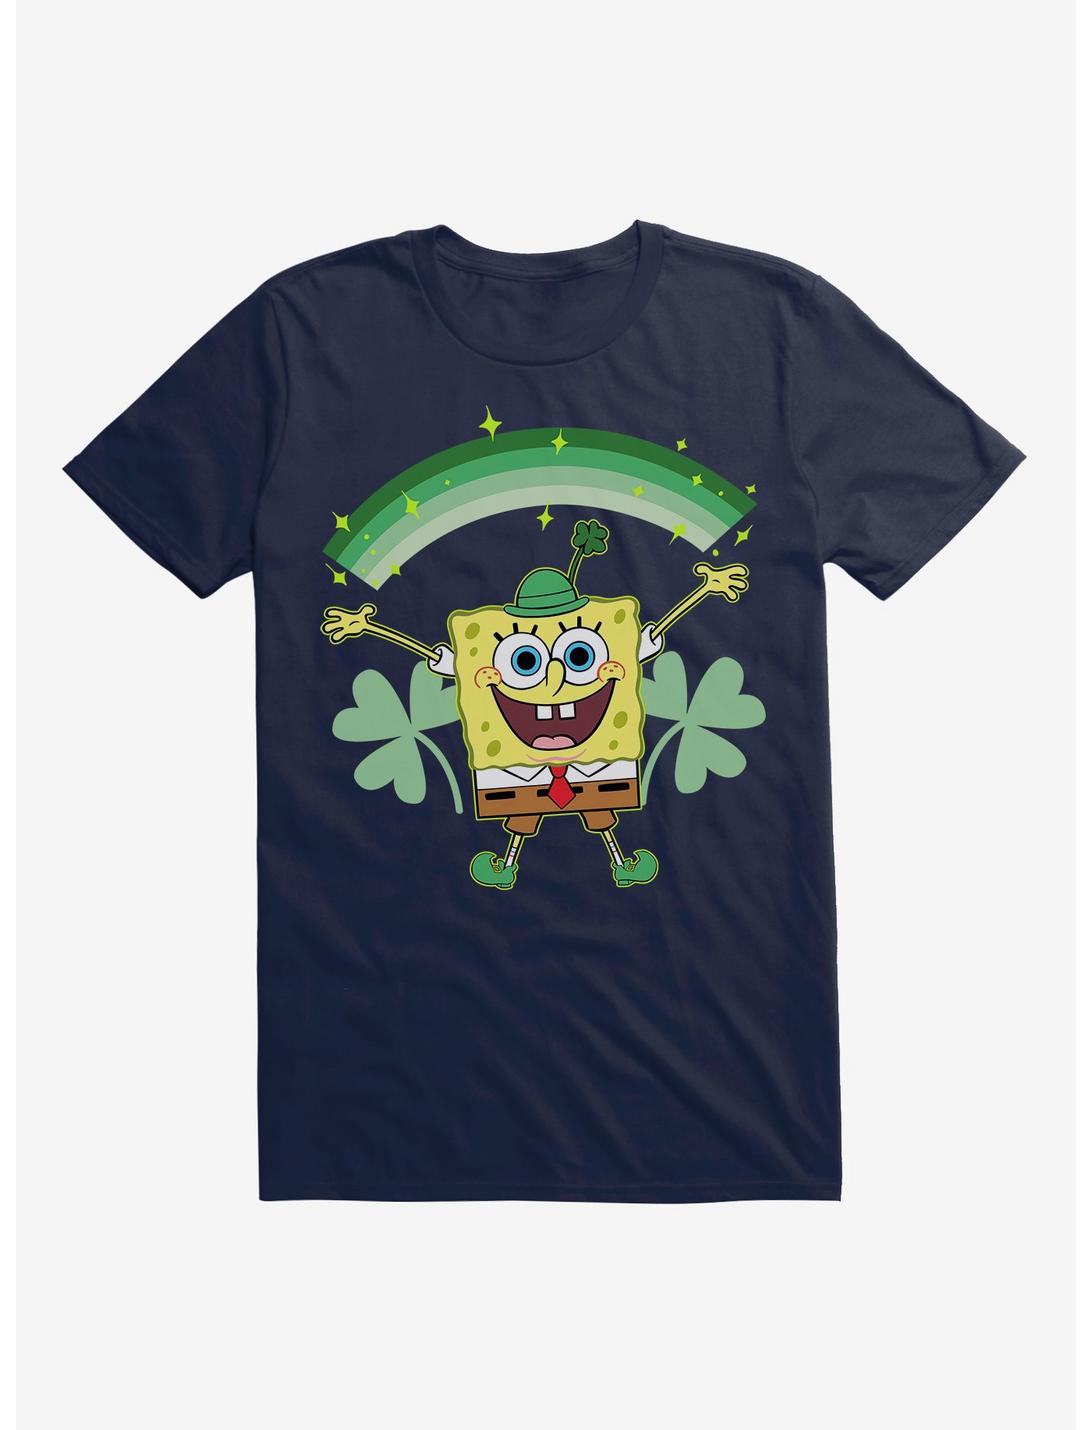 SpongeBob SquarePants St. Pattys Shamrocks T-Shirt, , hi-res